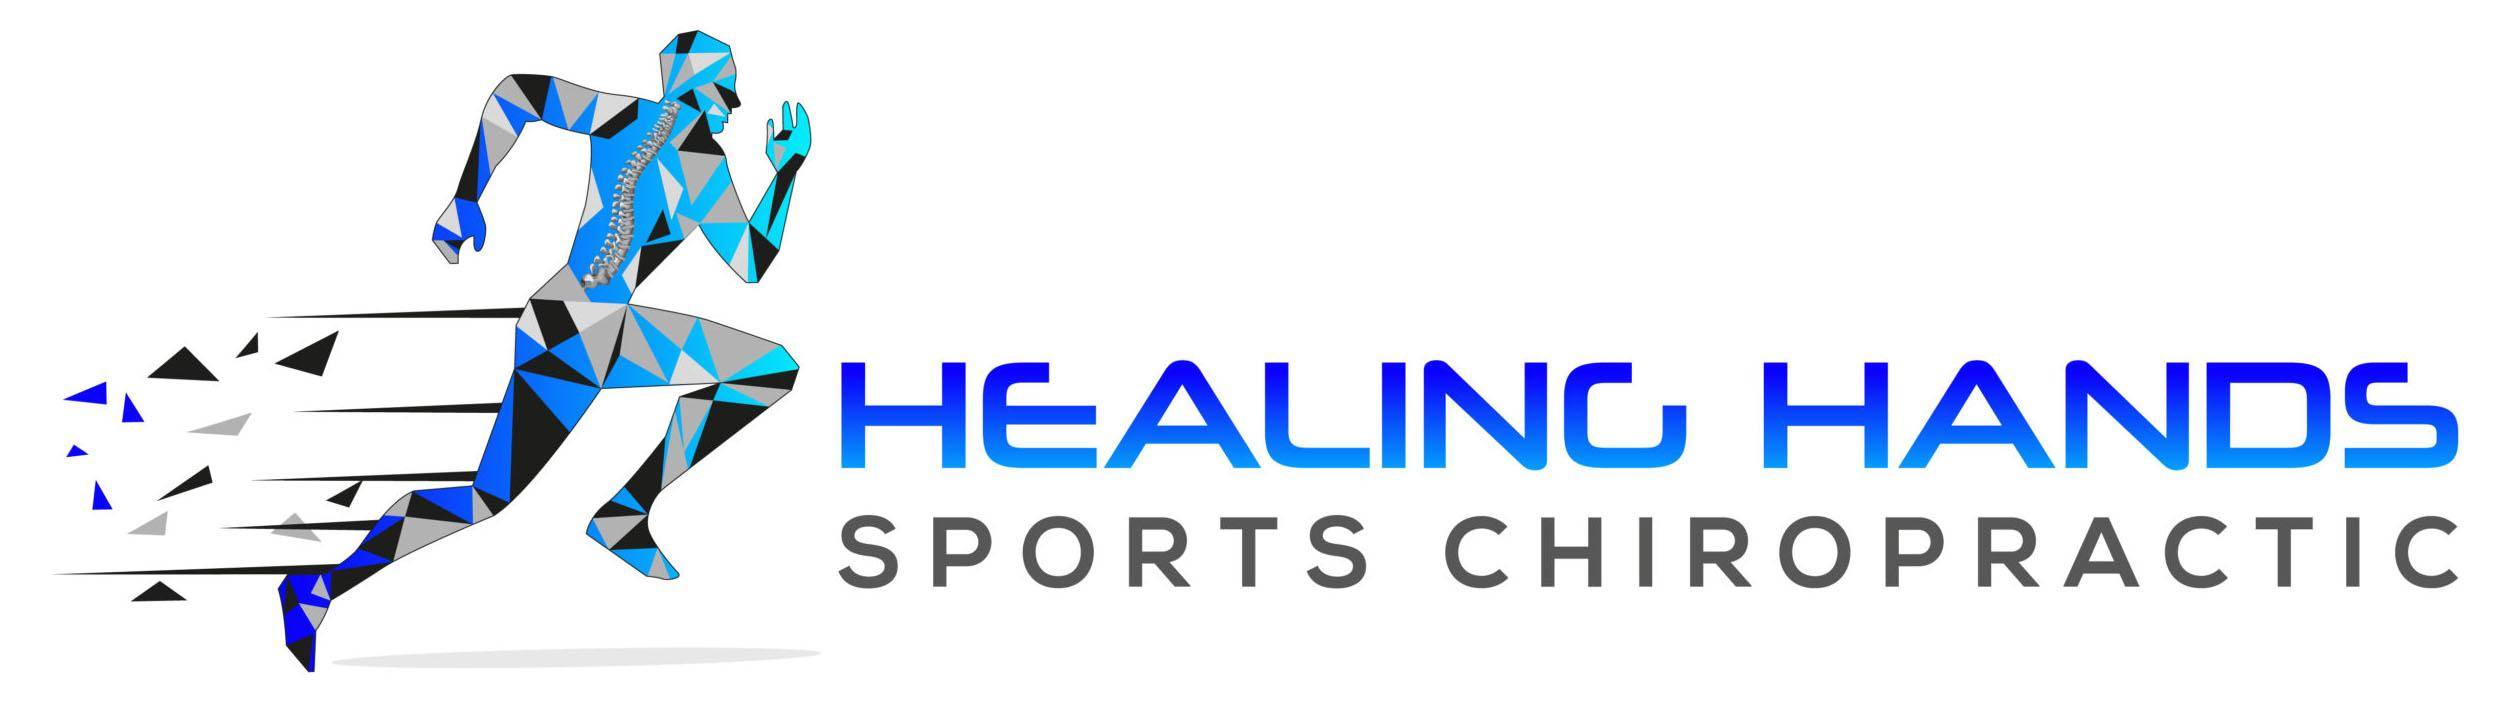 Healing Hands Sports Chiropractic